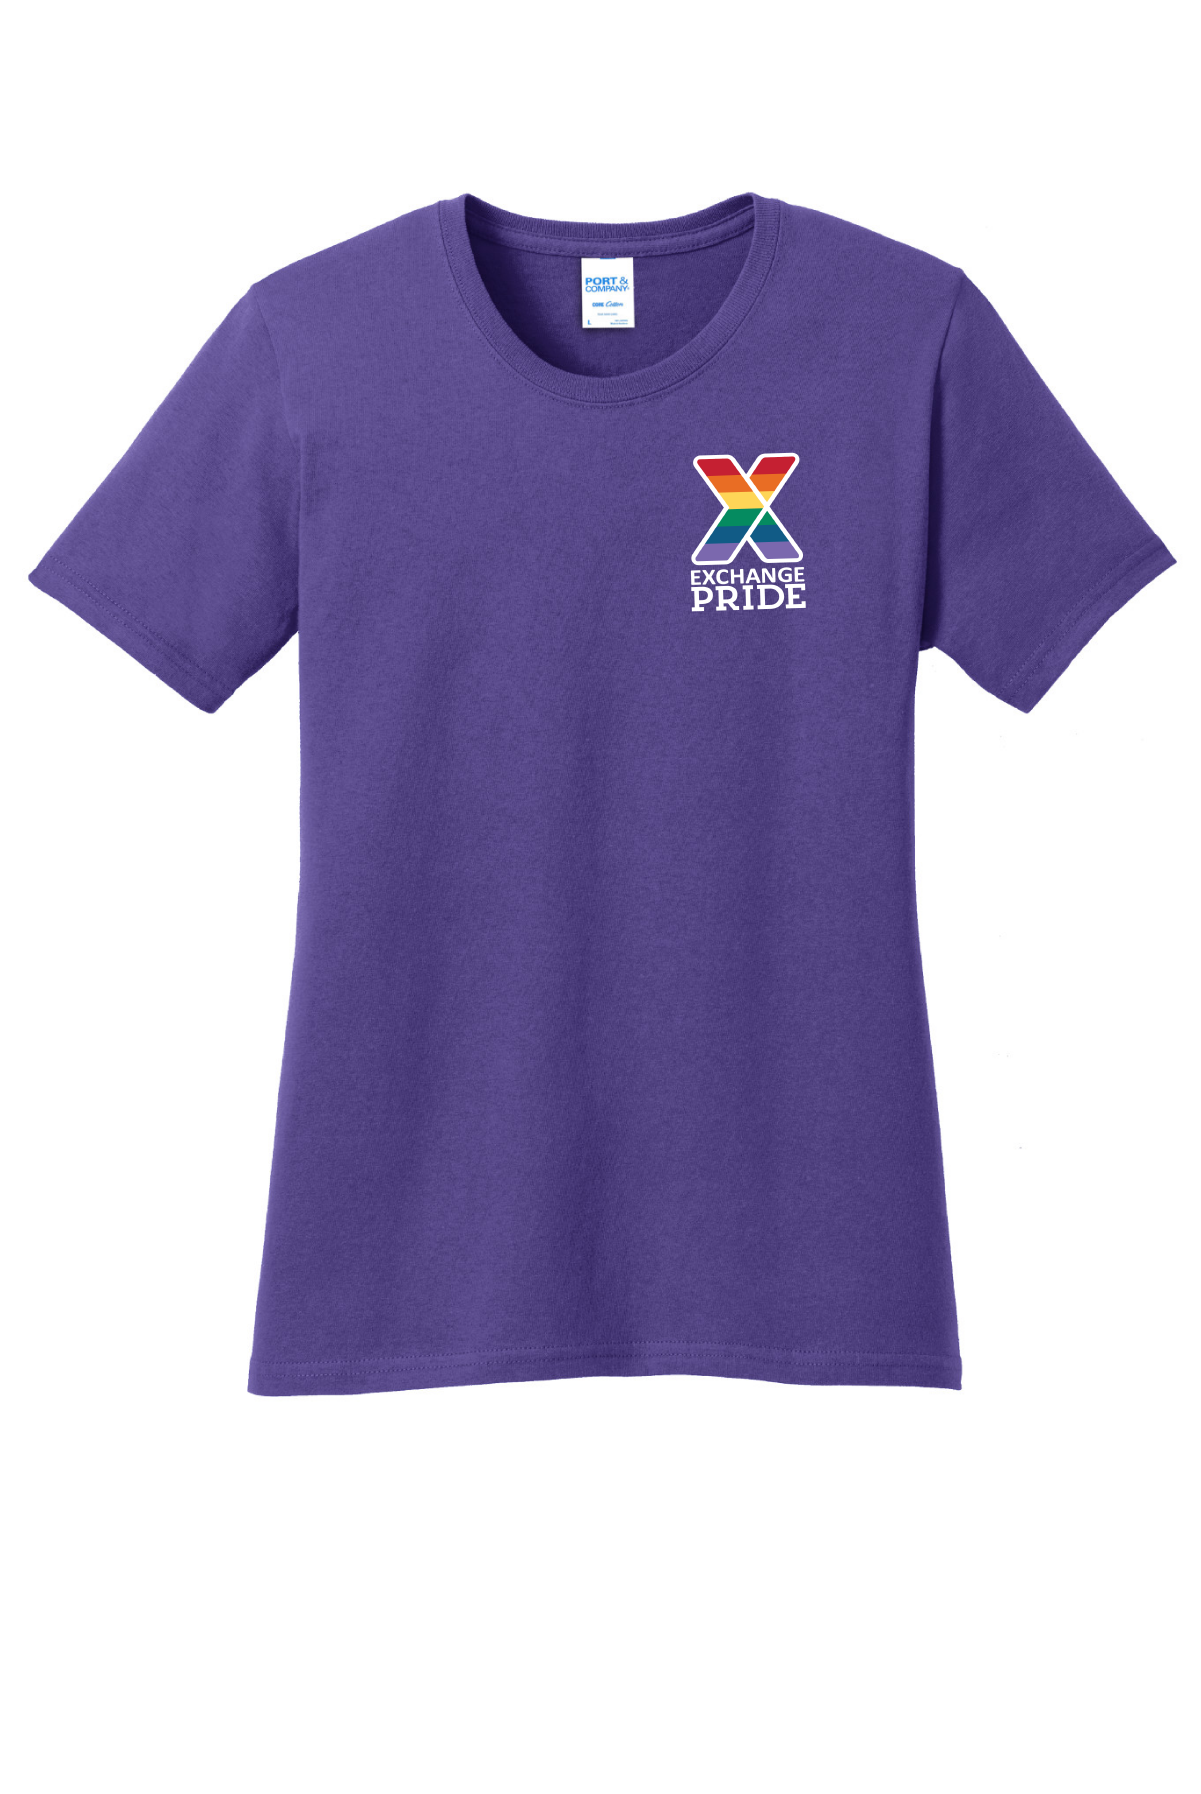 aafes-pride-ladies-t-shirt-lc-png.png